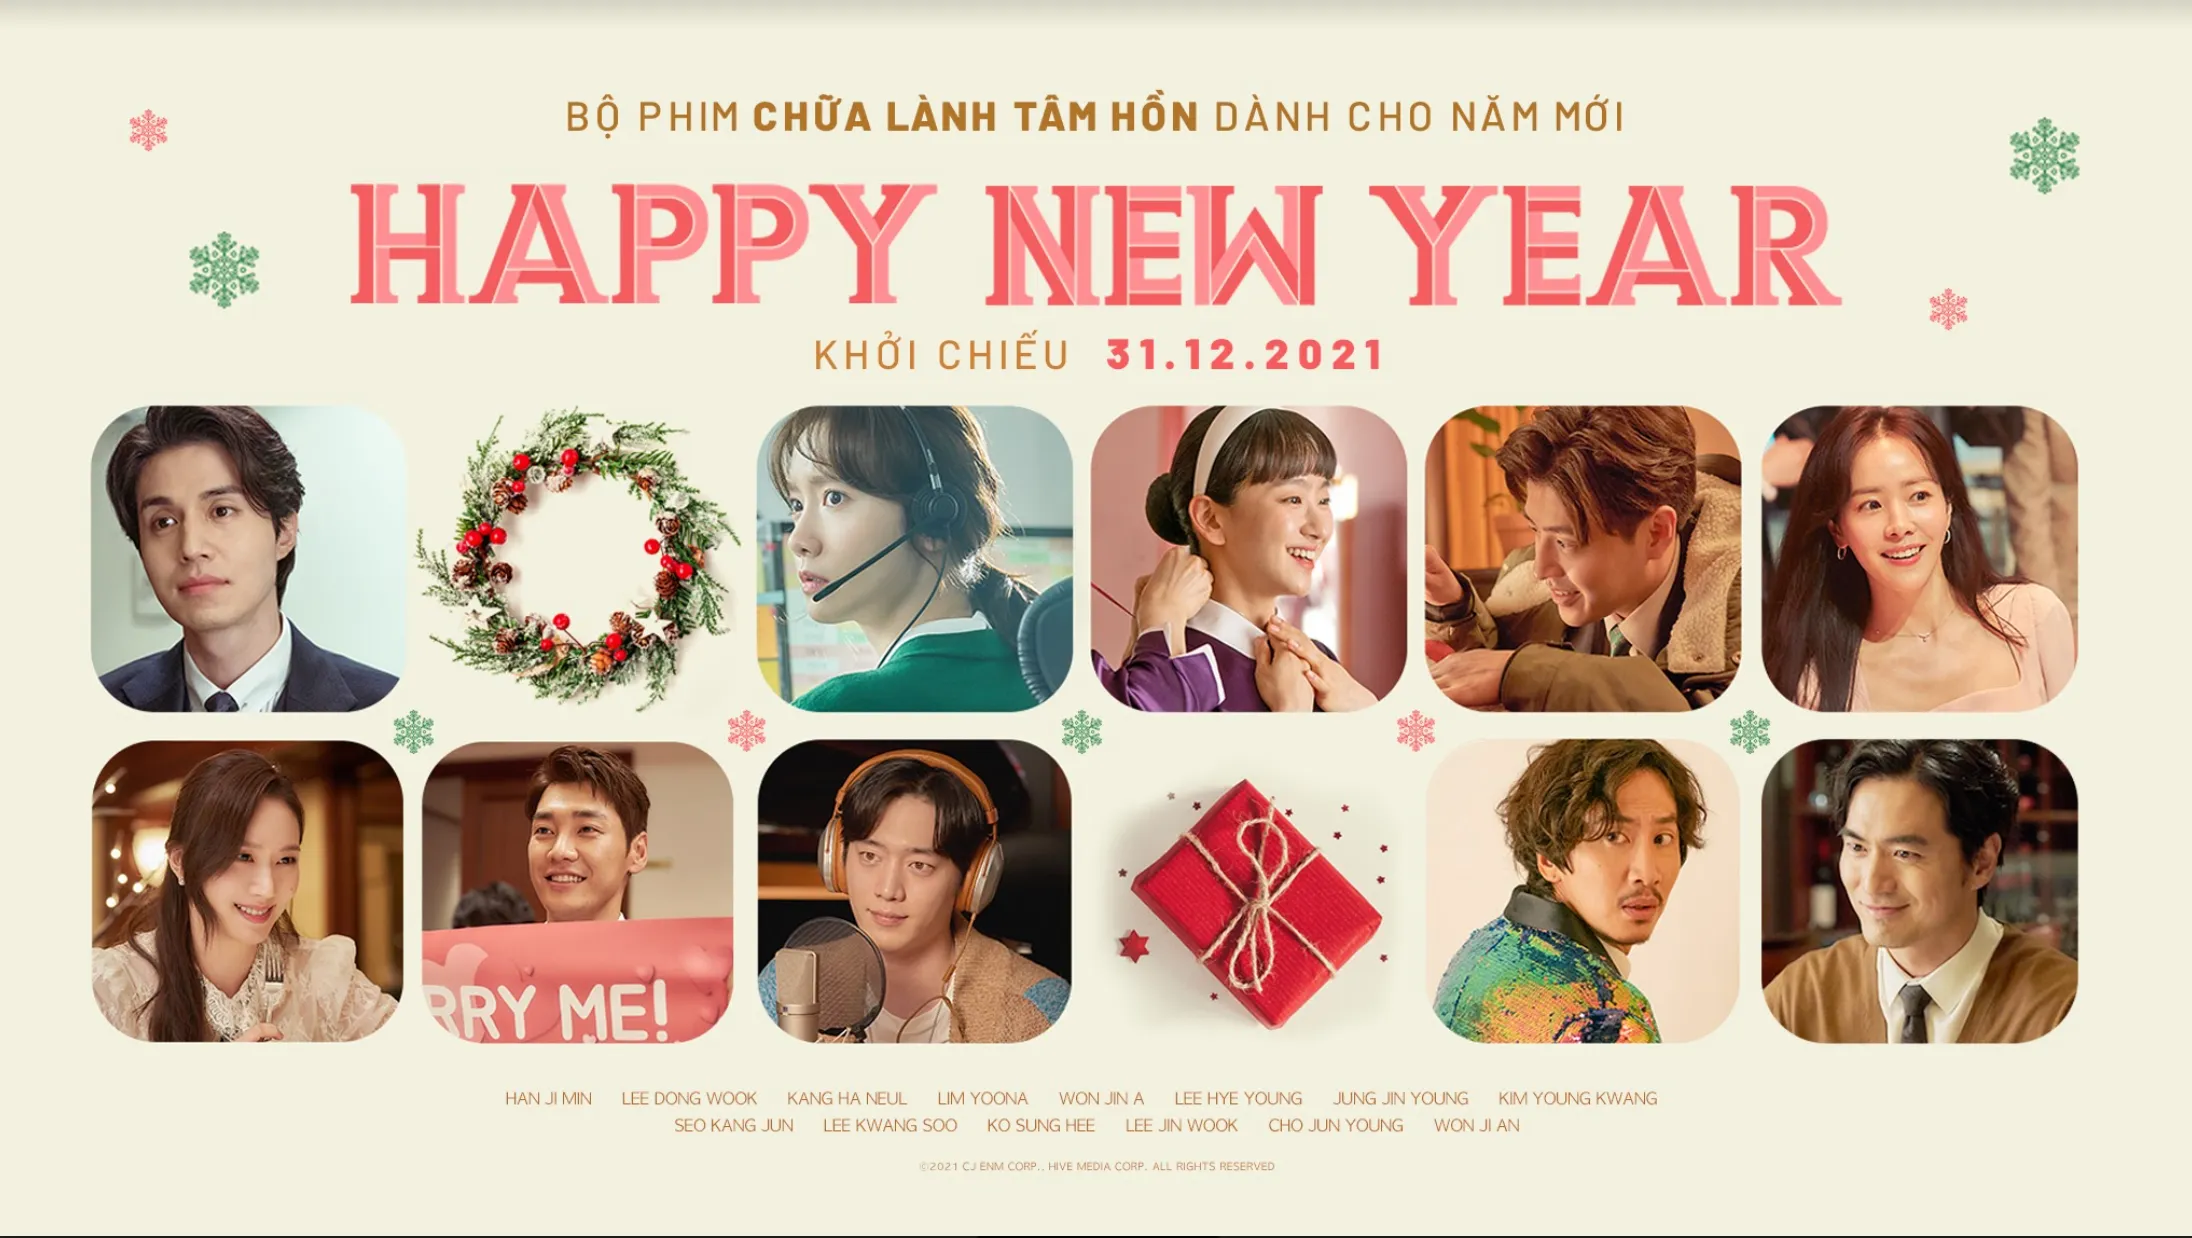 Ra mắt đồng thời với Hàn Quốc, Happy New Year là món quà năm mới dành cho khán giả yêu điện ảnh